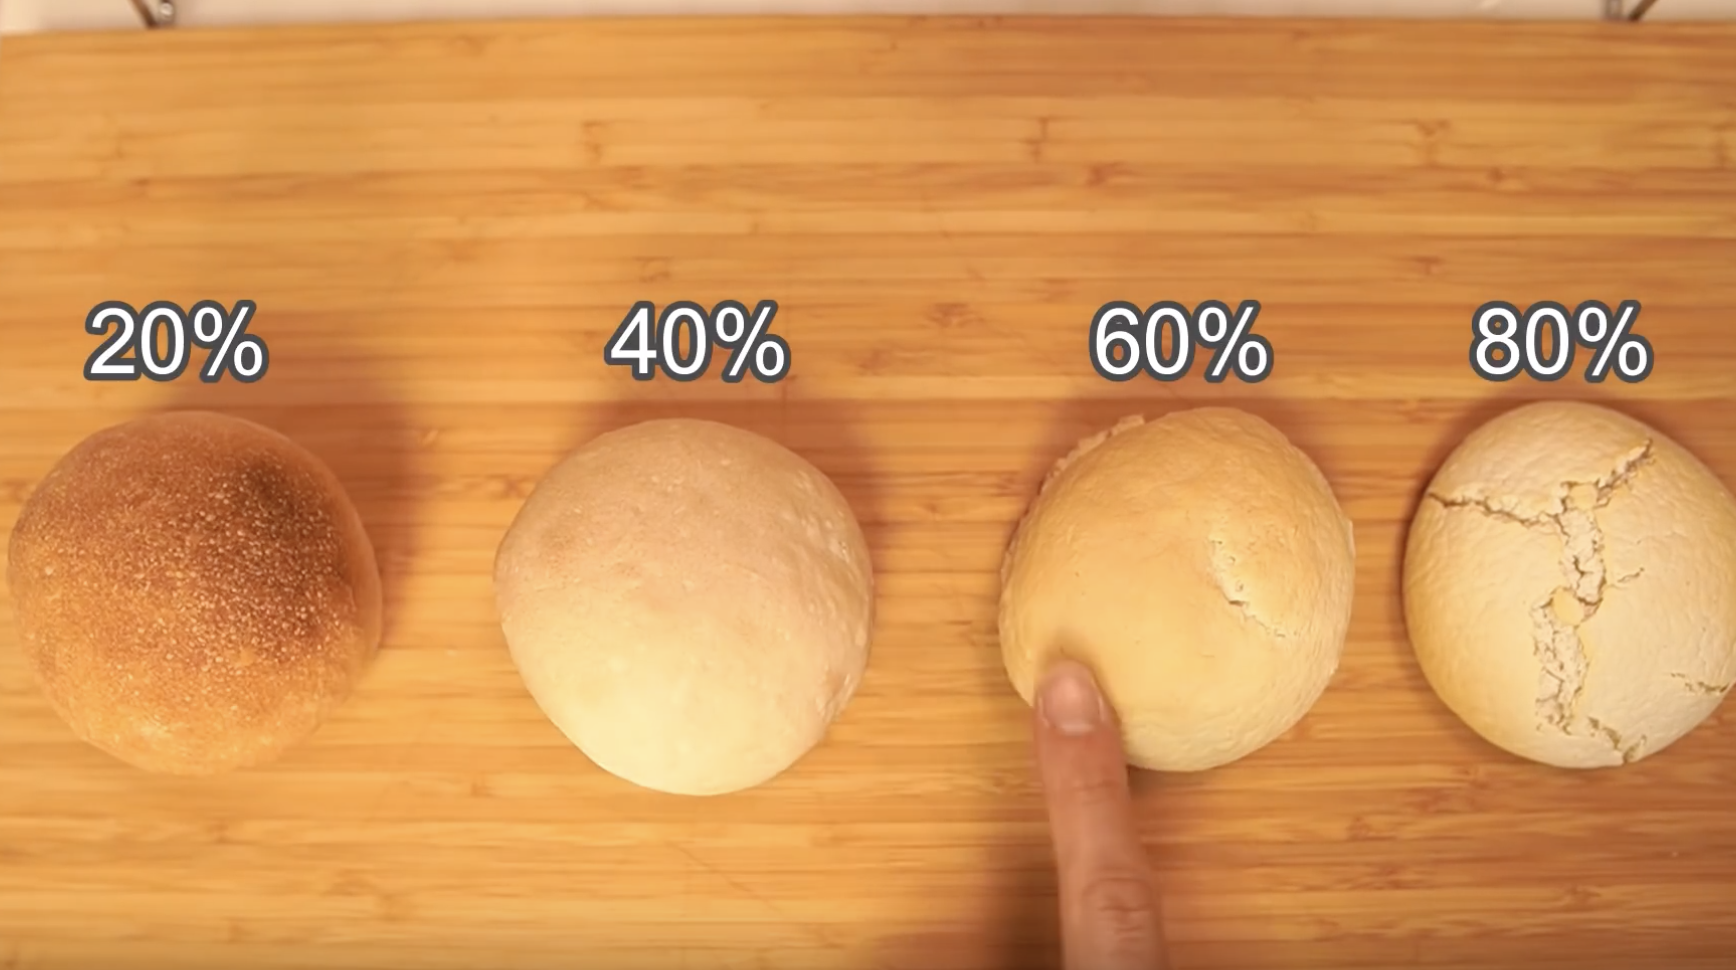 パン作りと米粉の関係を解説